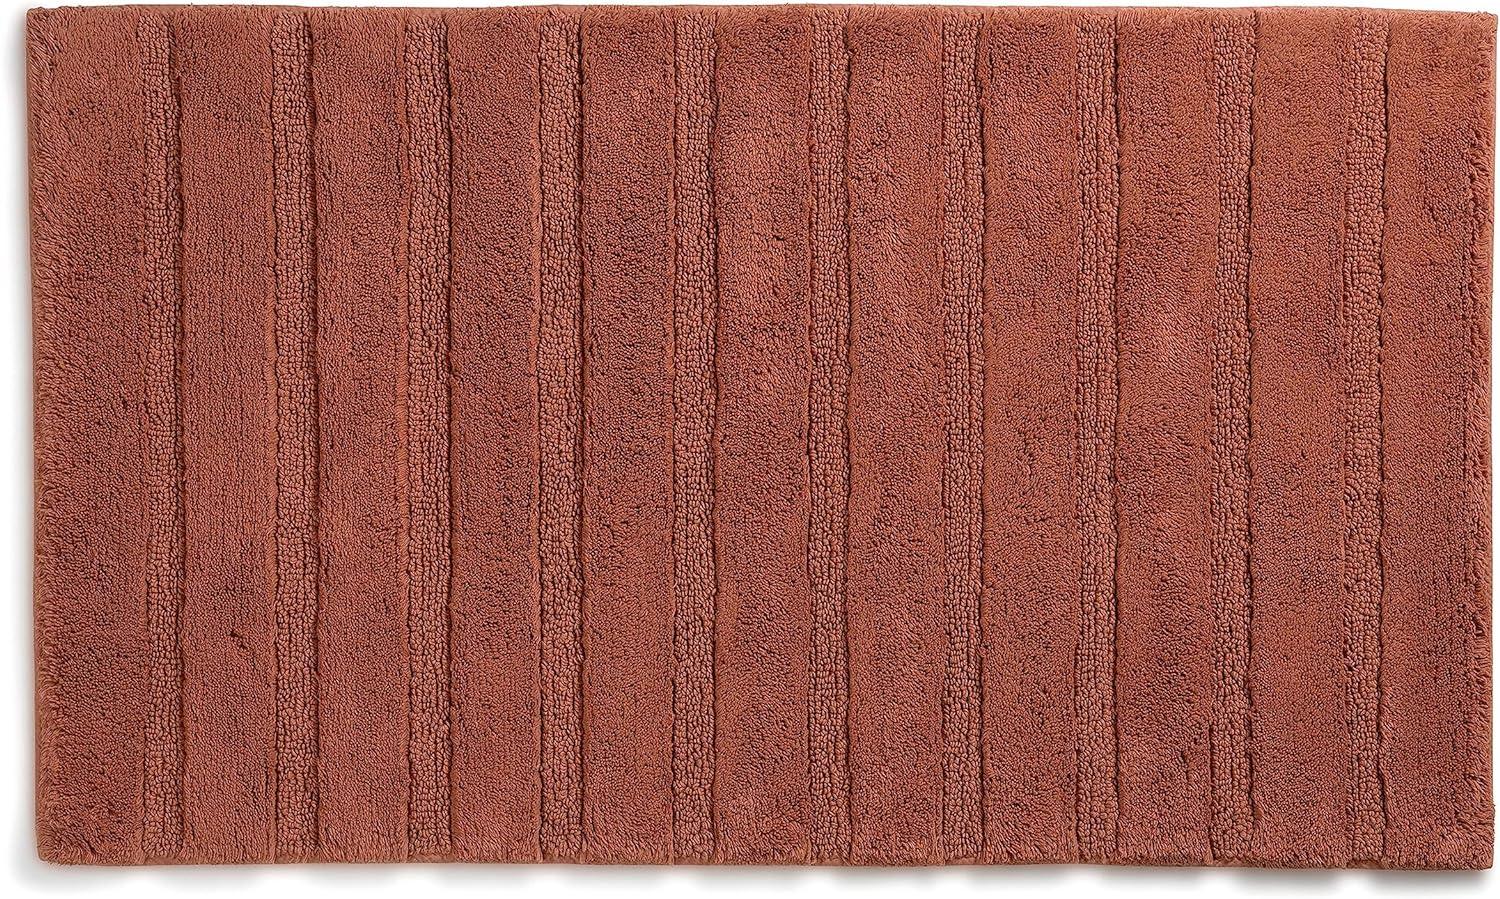 Kela Badematte Megan, 80 cm x 50 cm, 100% Baumwolle, Terra, rutschhemmend, waschbar bis 30° C, geeignet für Fußbodenheizung, 23589 Bild 1